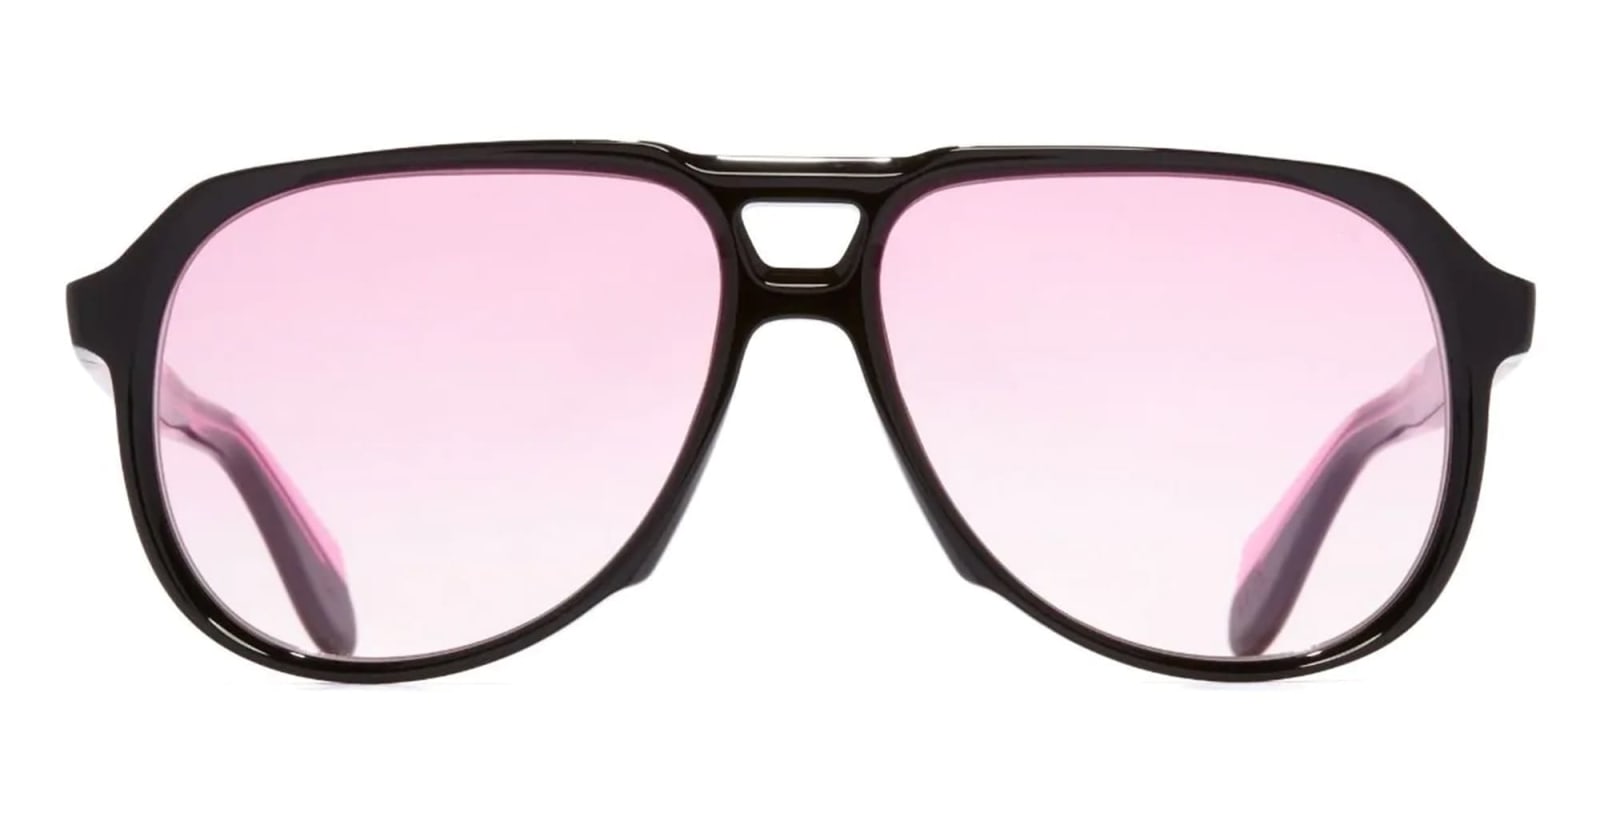 9782 / Black On Pink Sunglasses